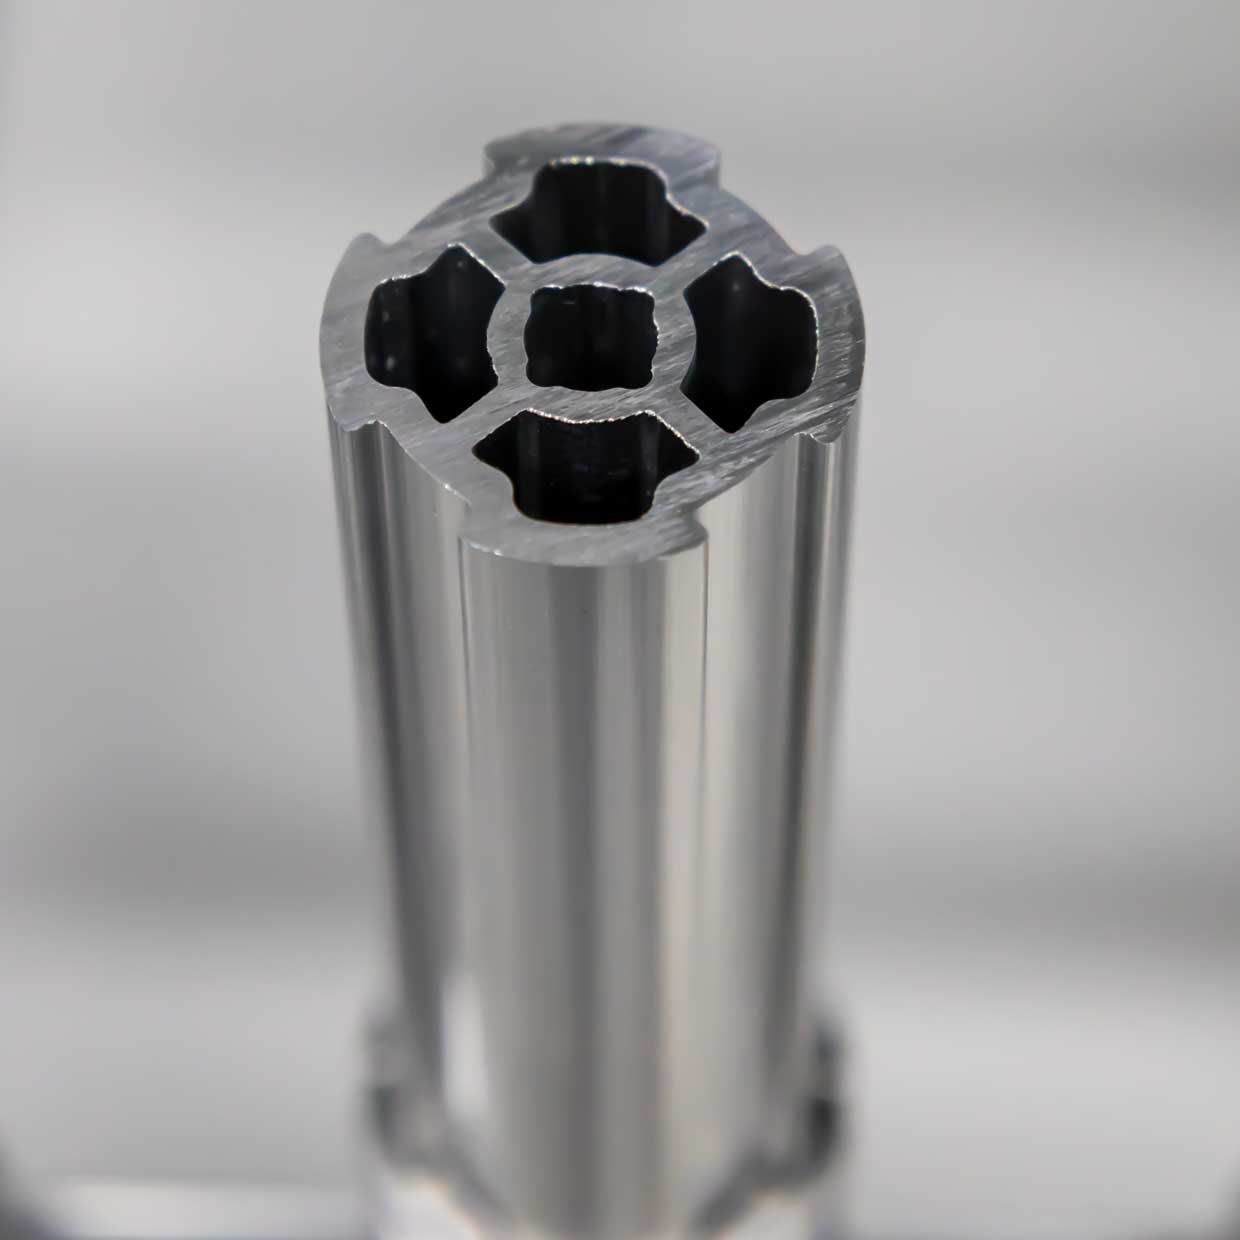 Țeavă rotundă profilată din aluminiu cu diametrul de 28 mm